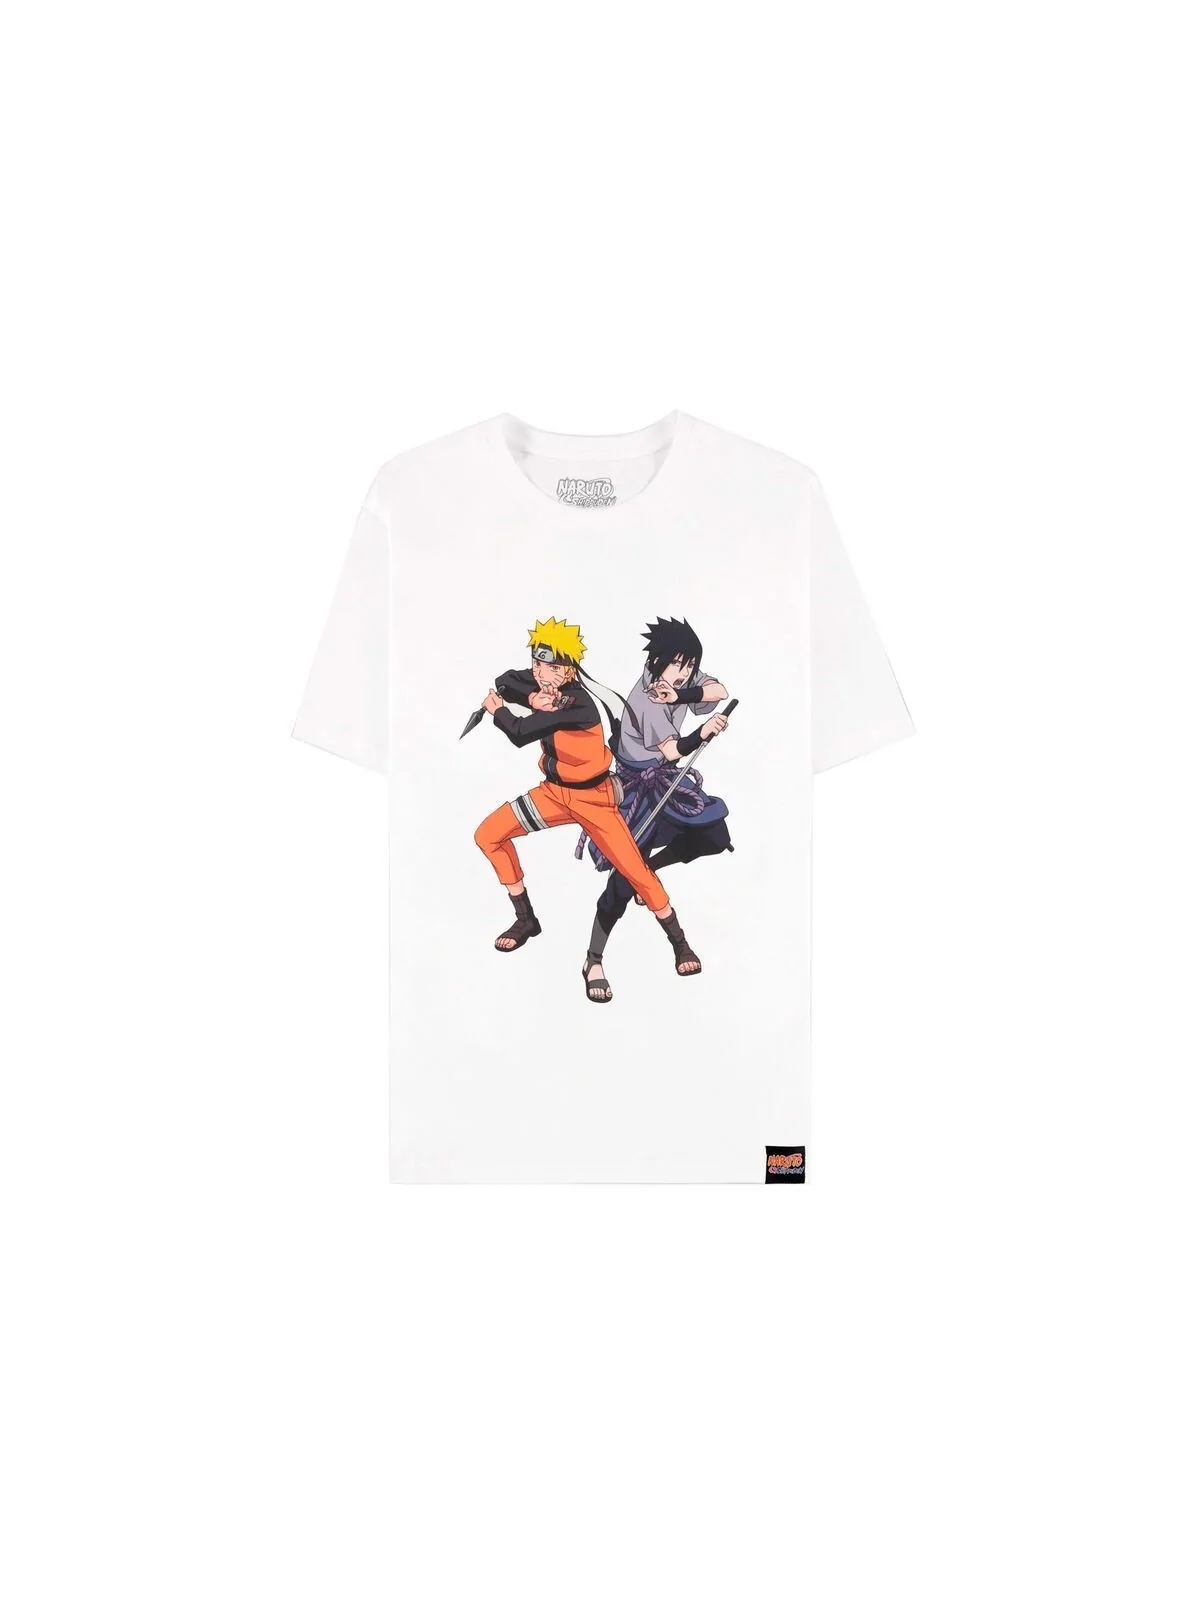 Comprar Naruto Shippuden Naruto & Sasuke t-shirt barato al mejor preci